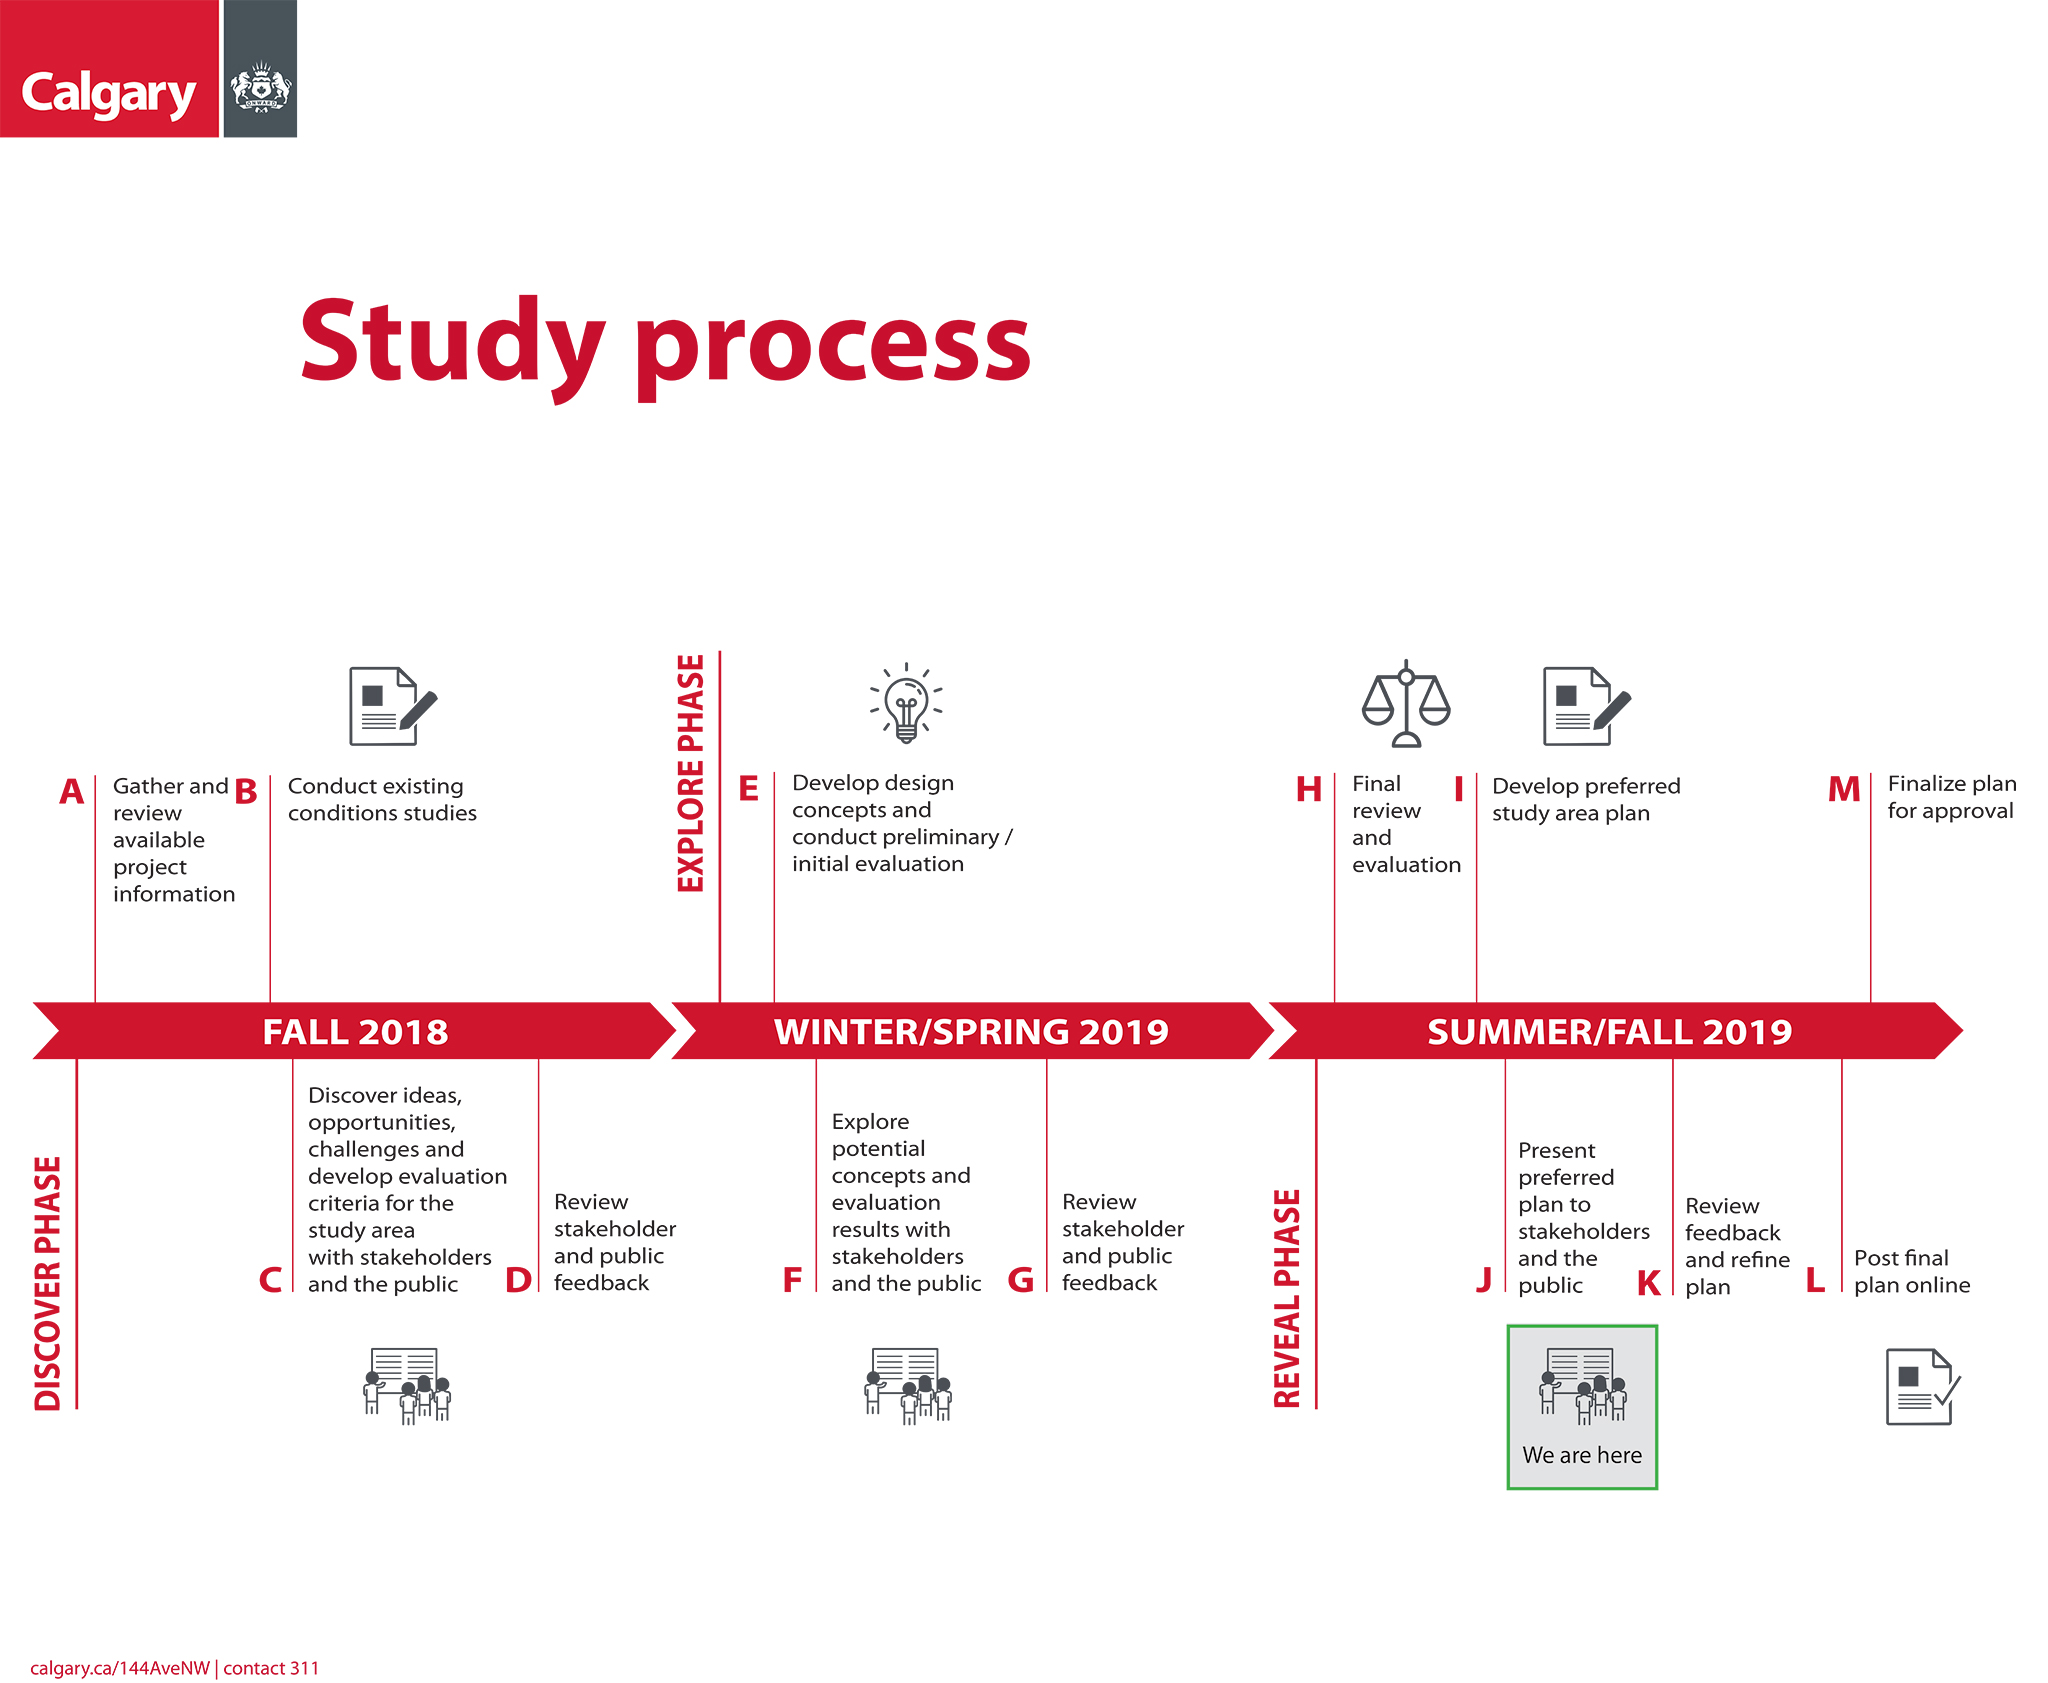 144 ave study process timeline